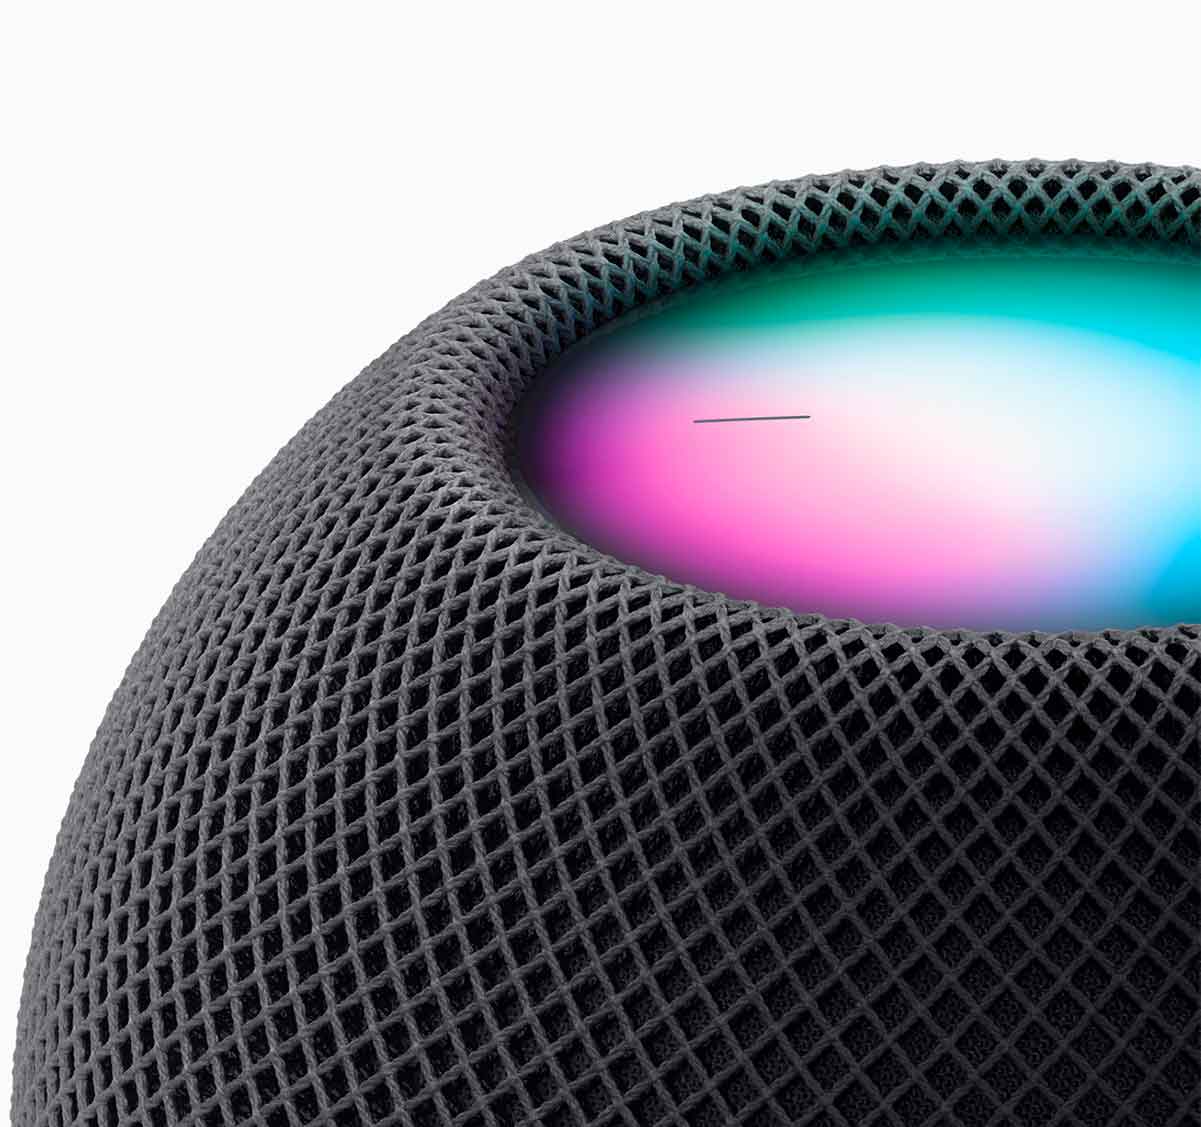 HomePod Mini: Apple ya tiene un altavoz inteligente "asequible"